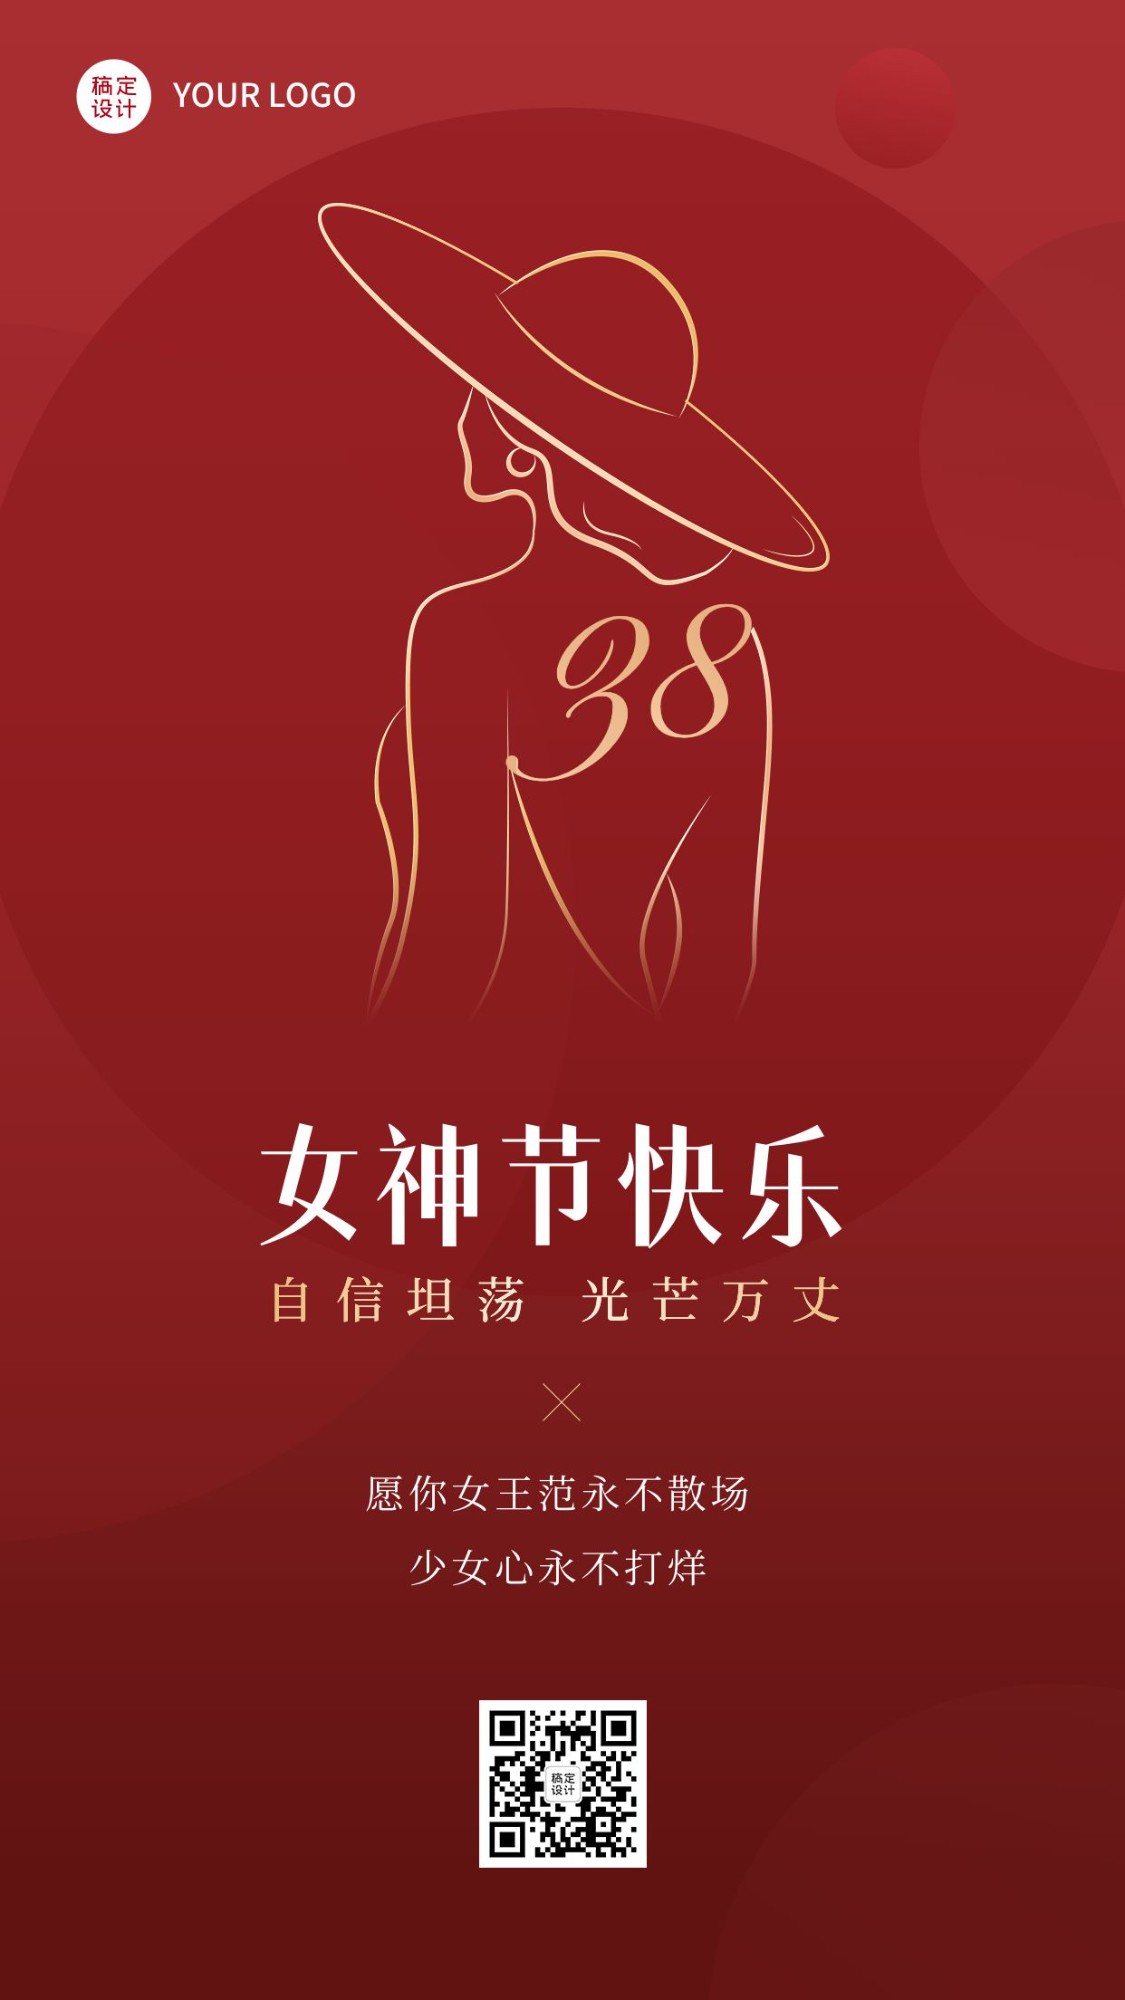 三八妇女节节日祝福手机海报